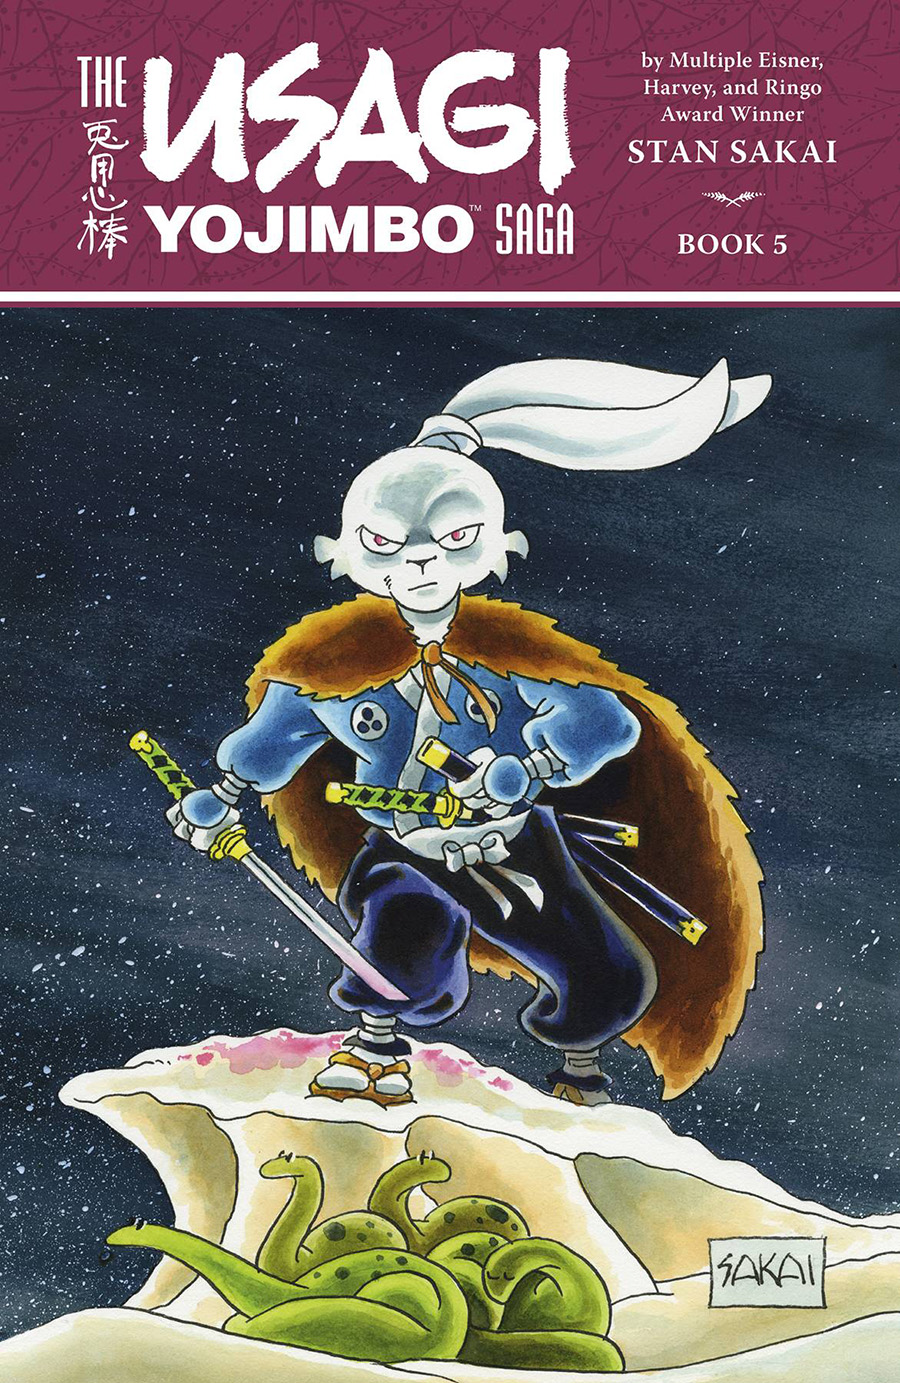 Usagi Yojimbo Saga Vol 5 TP 2nd Edition